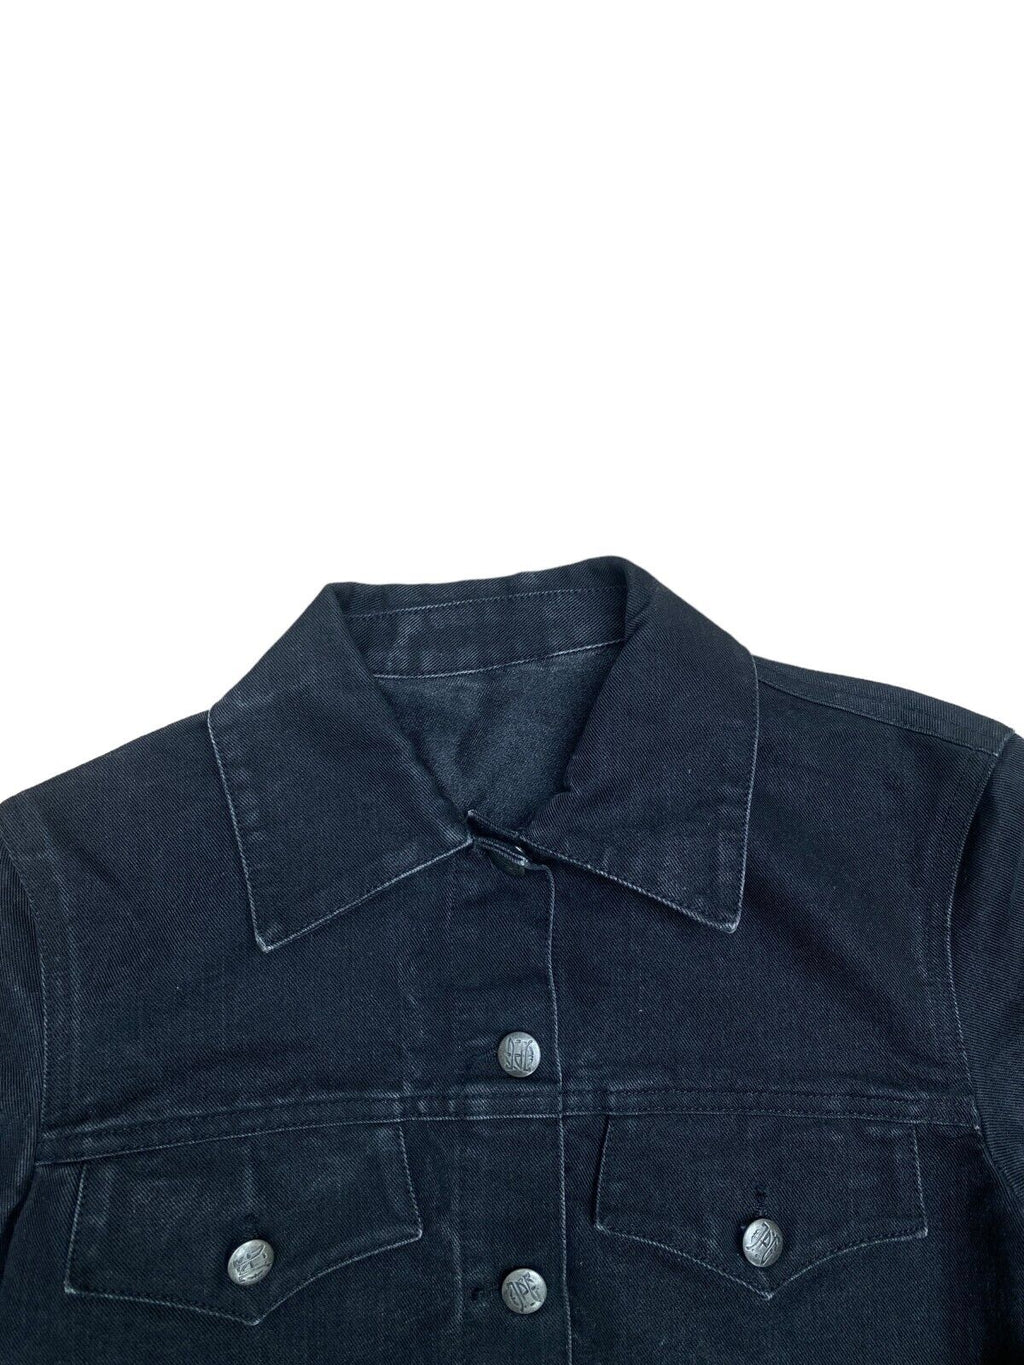 Vintage Black denim jacket